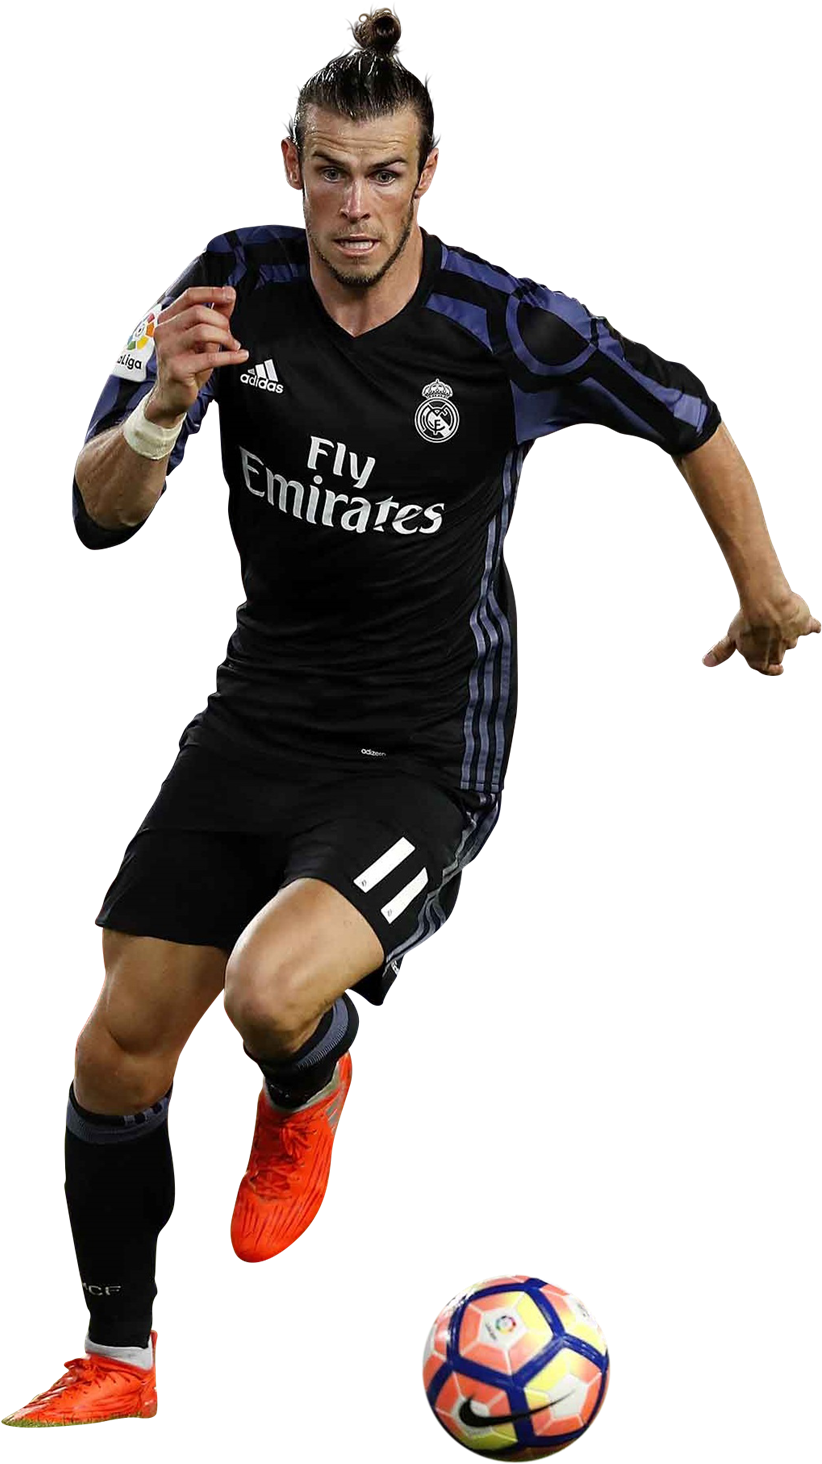 Gareth Bale Football Render - Soccer Player Deviantart Png (844x1500), Png Download